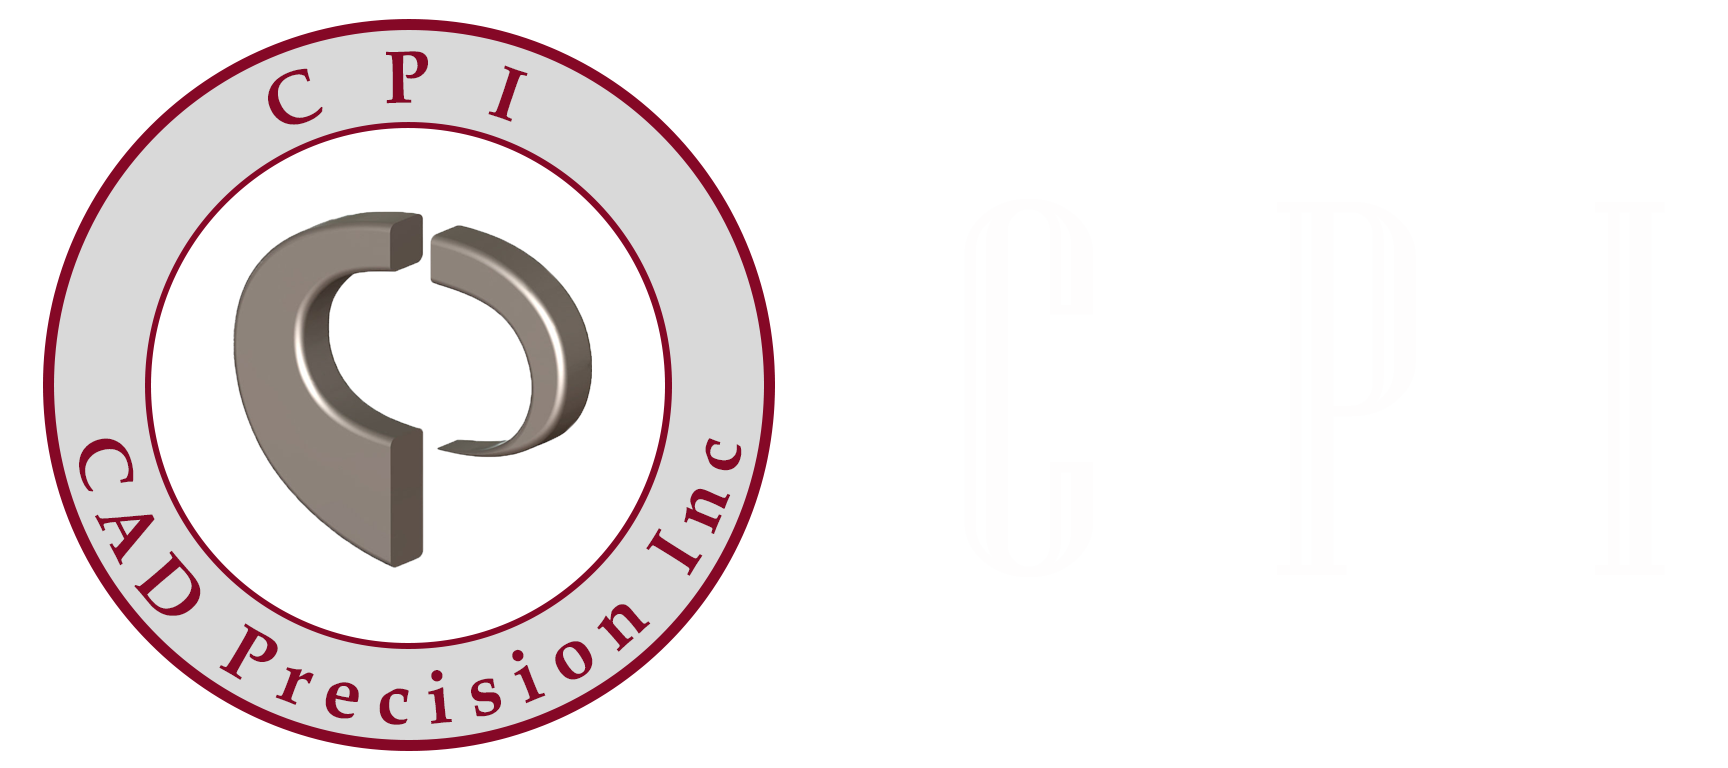 ICC - International Criminal Court Logo [icc-cpi.int] - PNG Logo Vector  Brand Downloads (SVG, EPS)